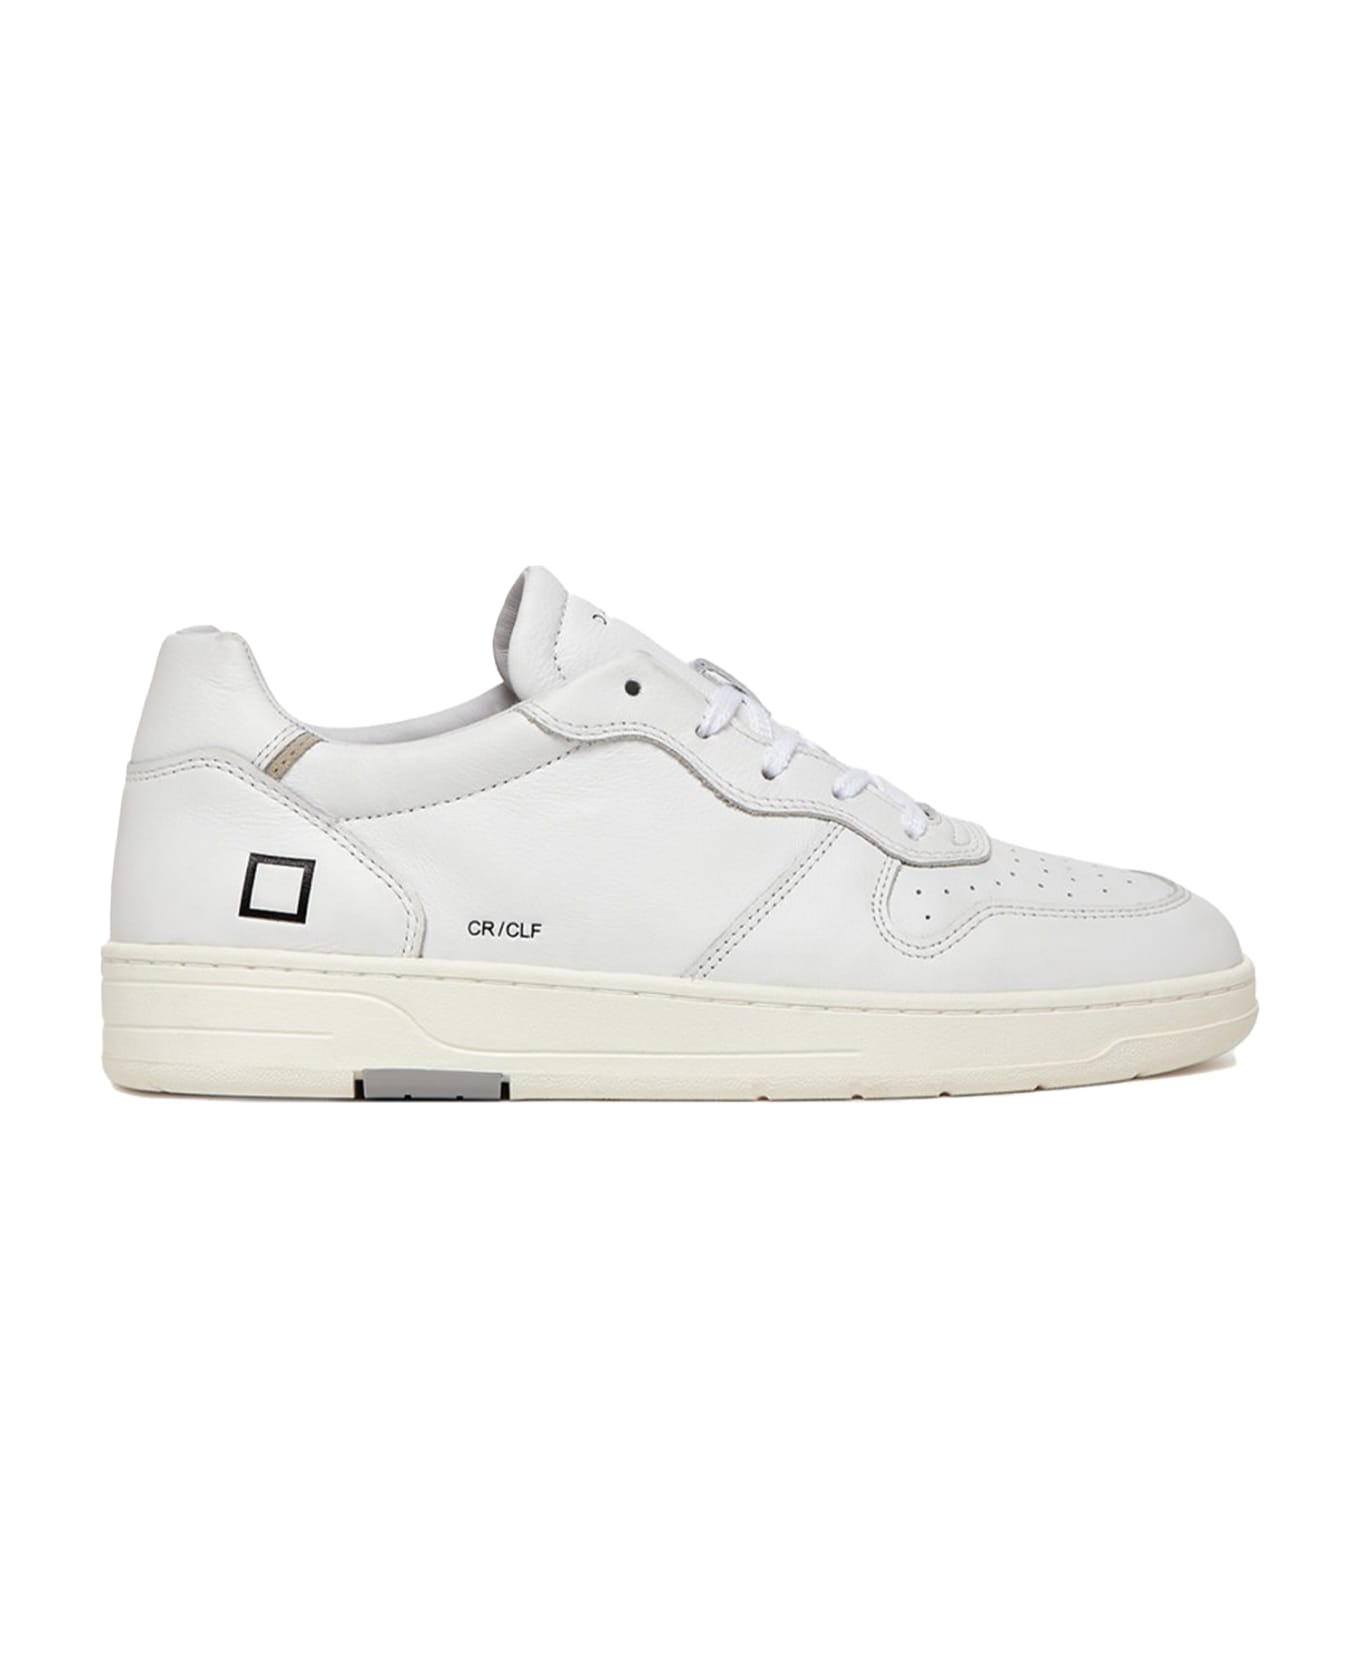 D.A.T.E. Court Men's White Leather Sneaker - WHITE スニーカー